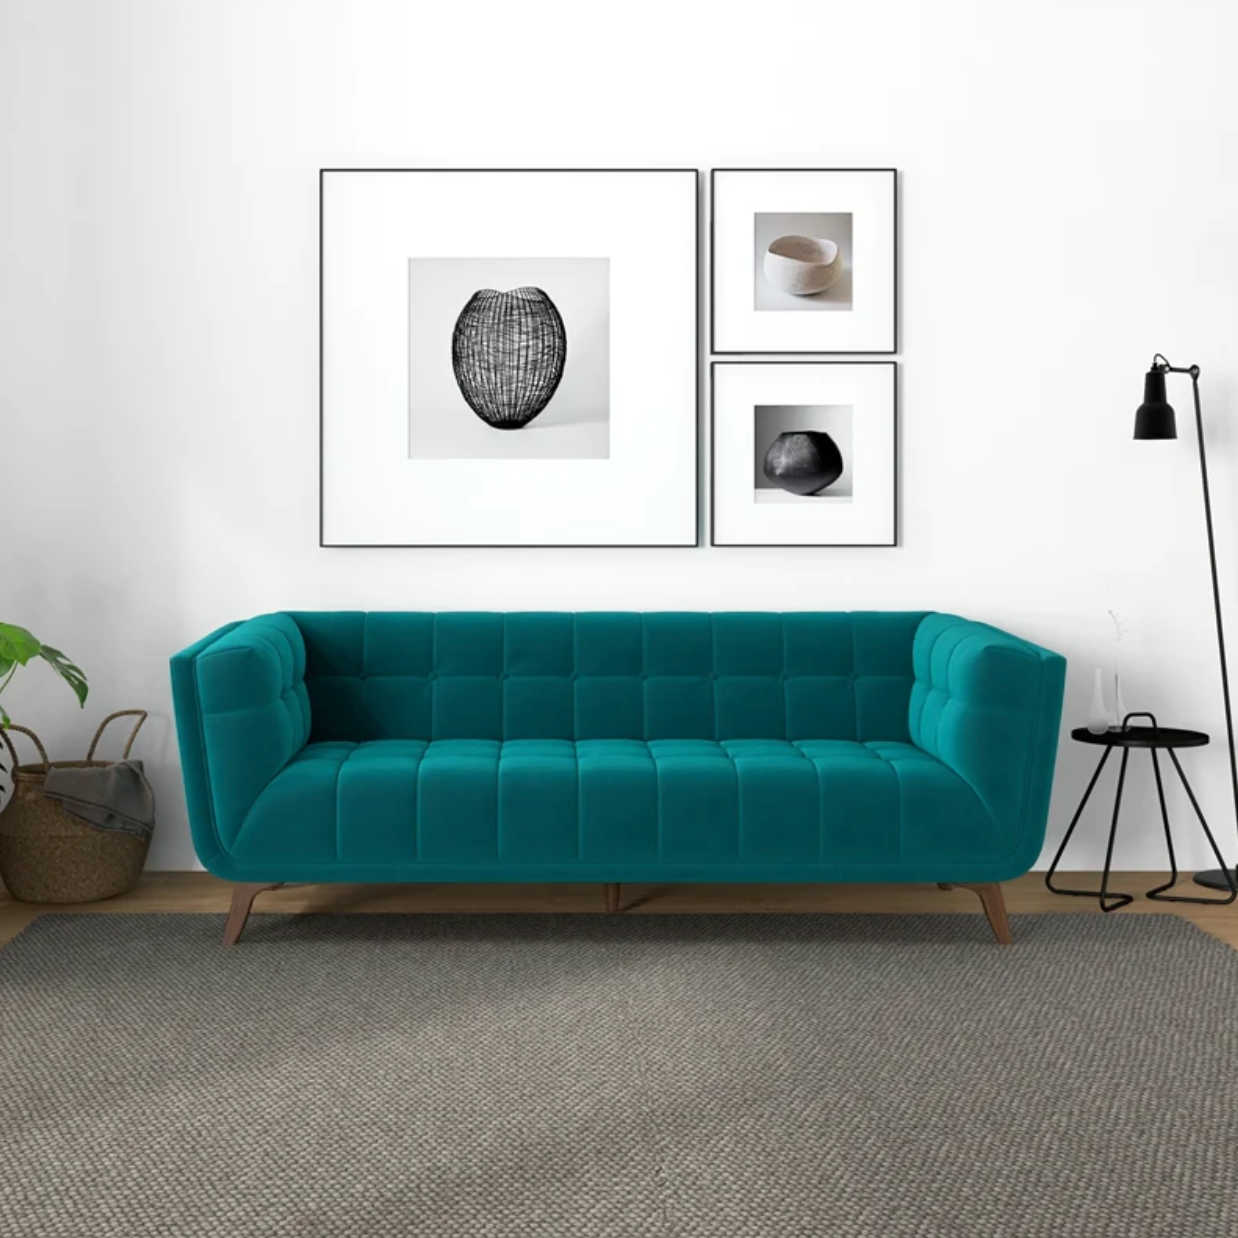 Addison Mid-Century Modern Sofa in Teal Velvet